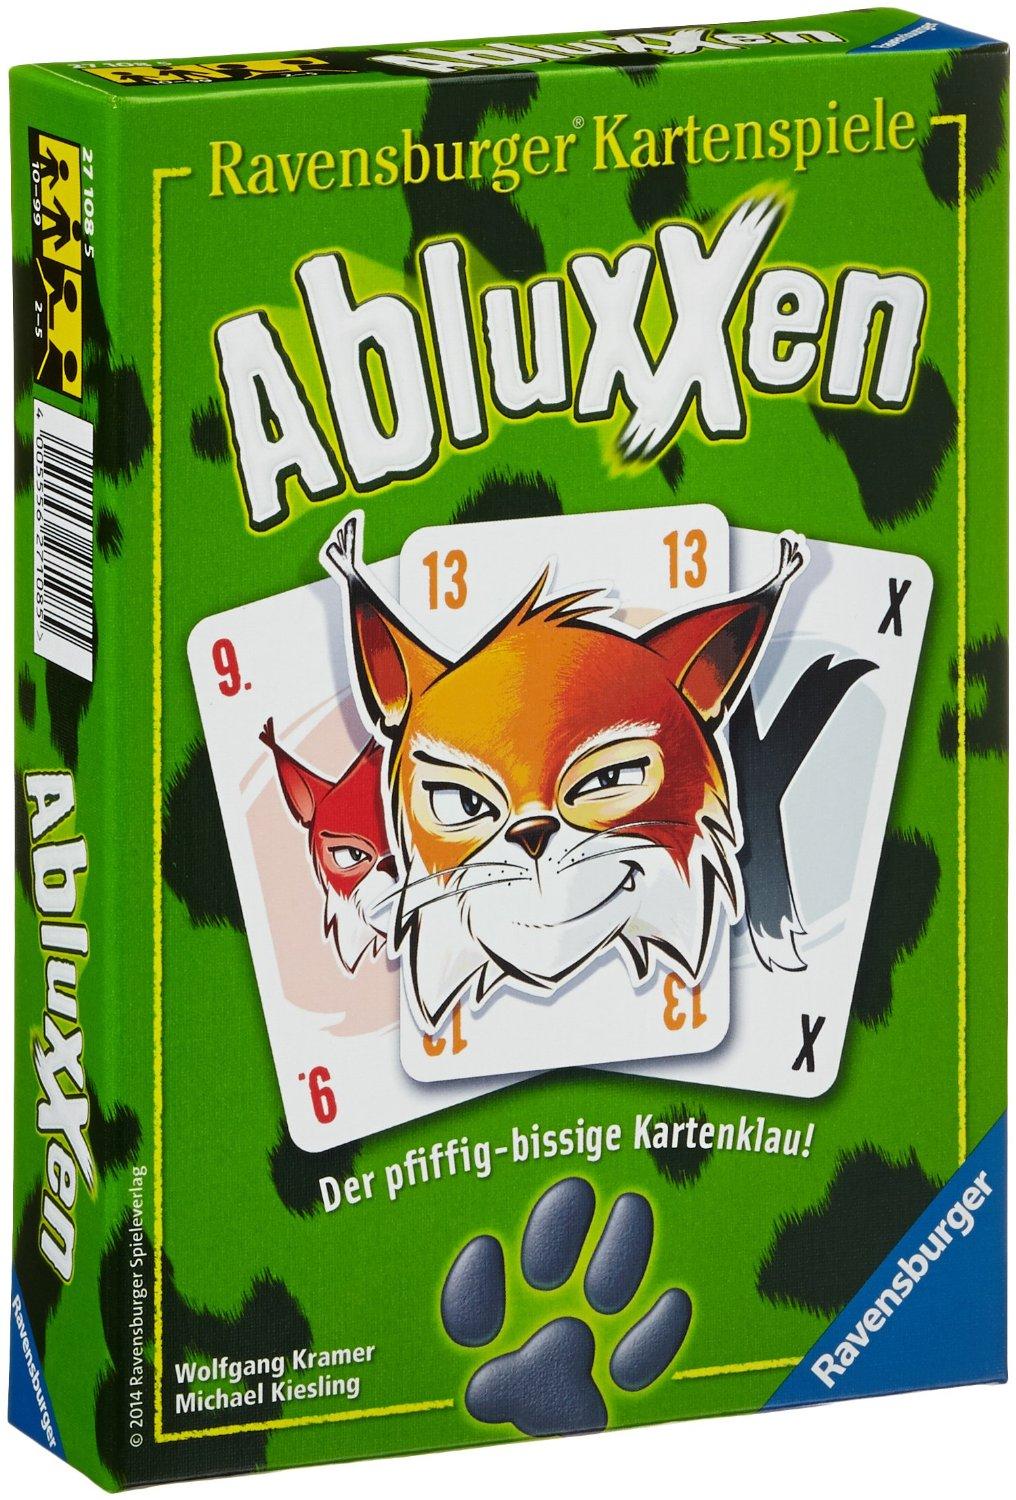 Abluxxen 0 (0)